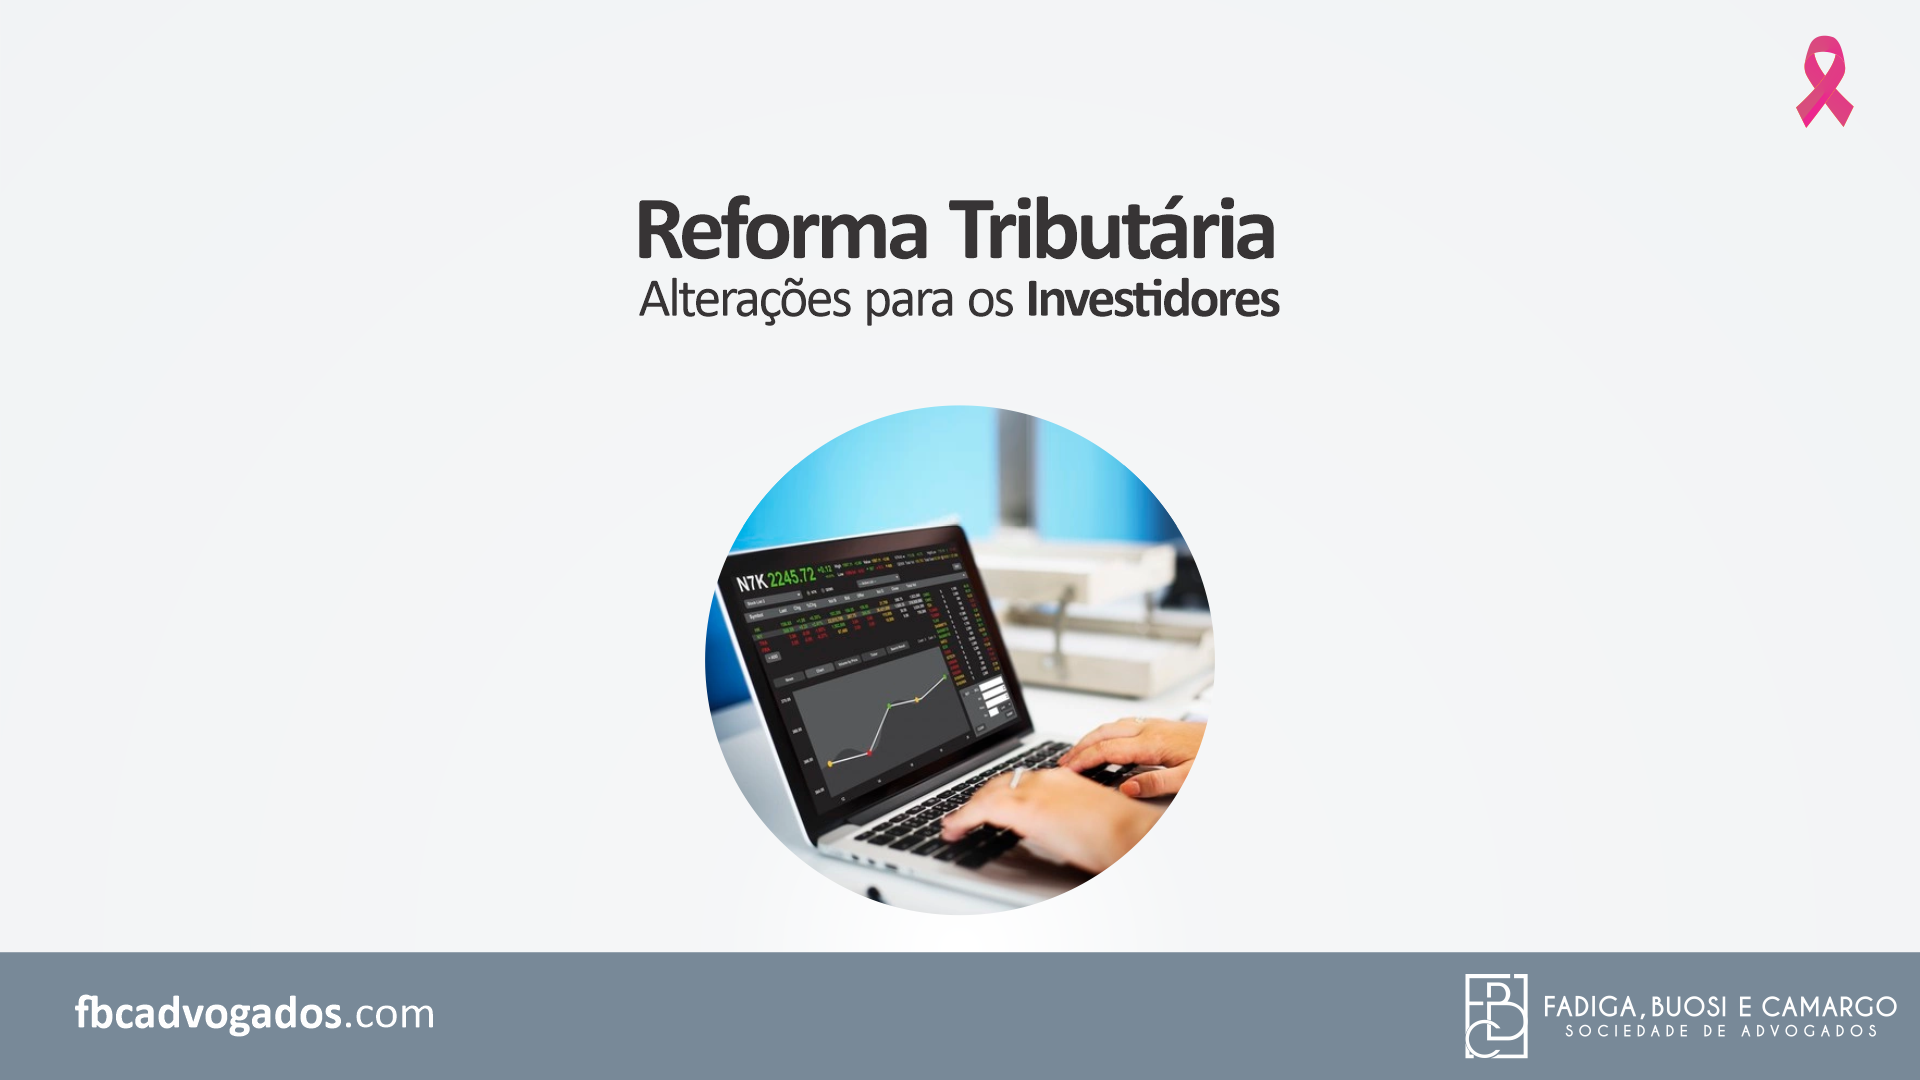 Reforma Tributária: alterações para os investidores